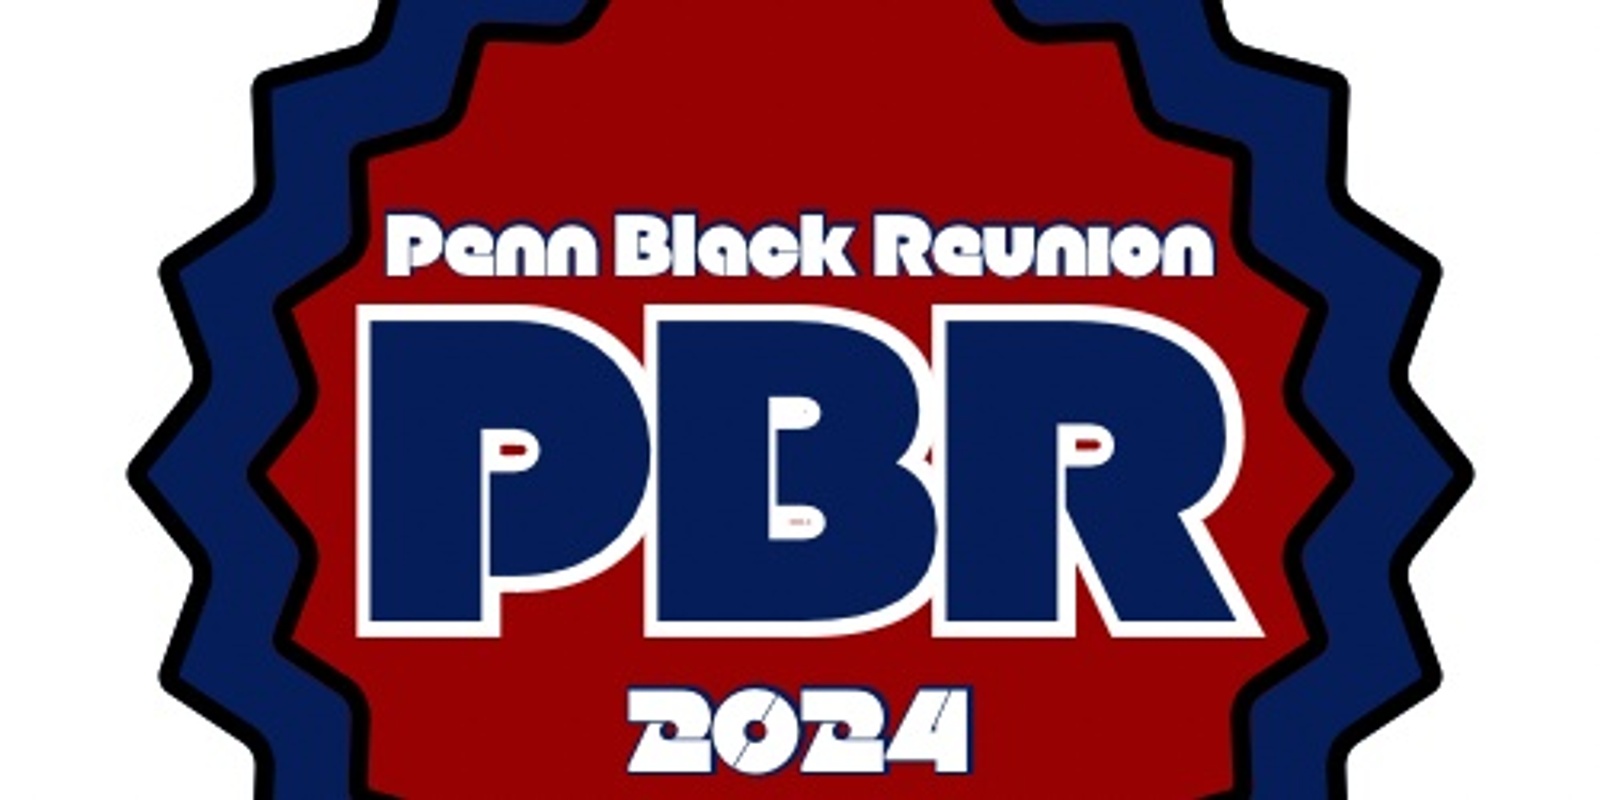 Banner image for Penn Black Reunion 2024